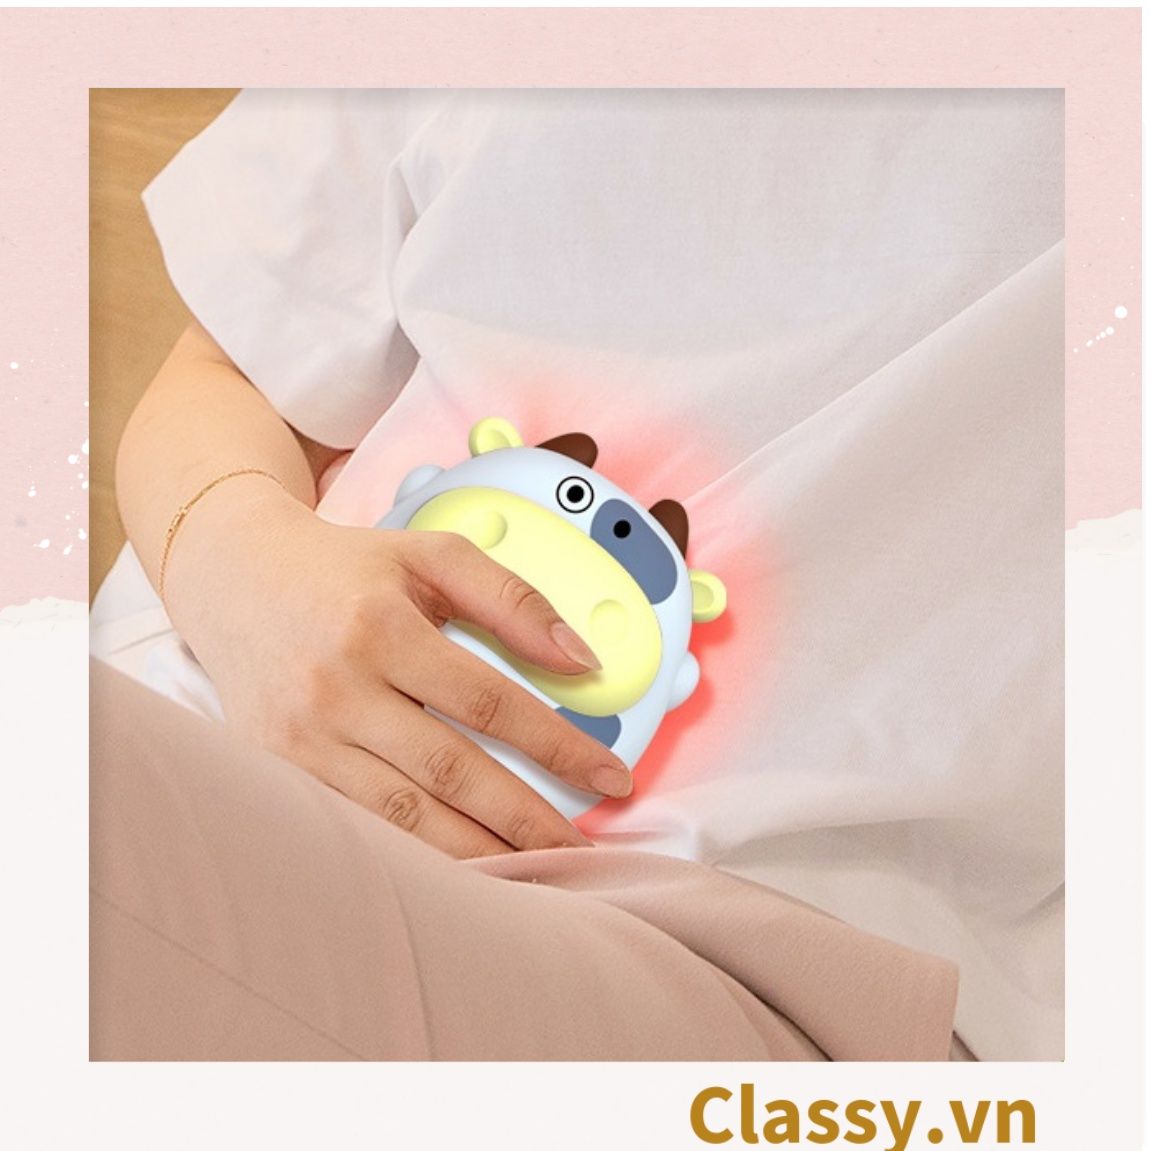  Đèn ngủ, máy sưởi ấm mini giúp chườm nóng giảm đau bụng, giữ ấm chân tay PK1356 